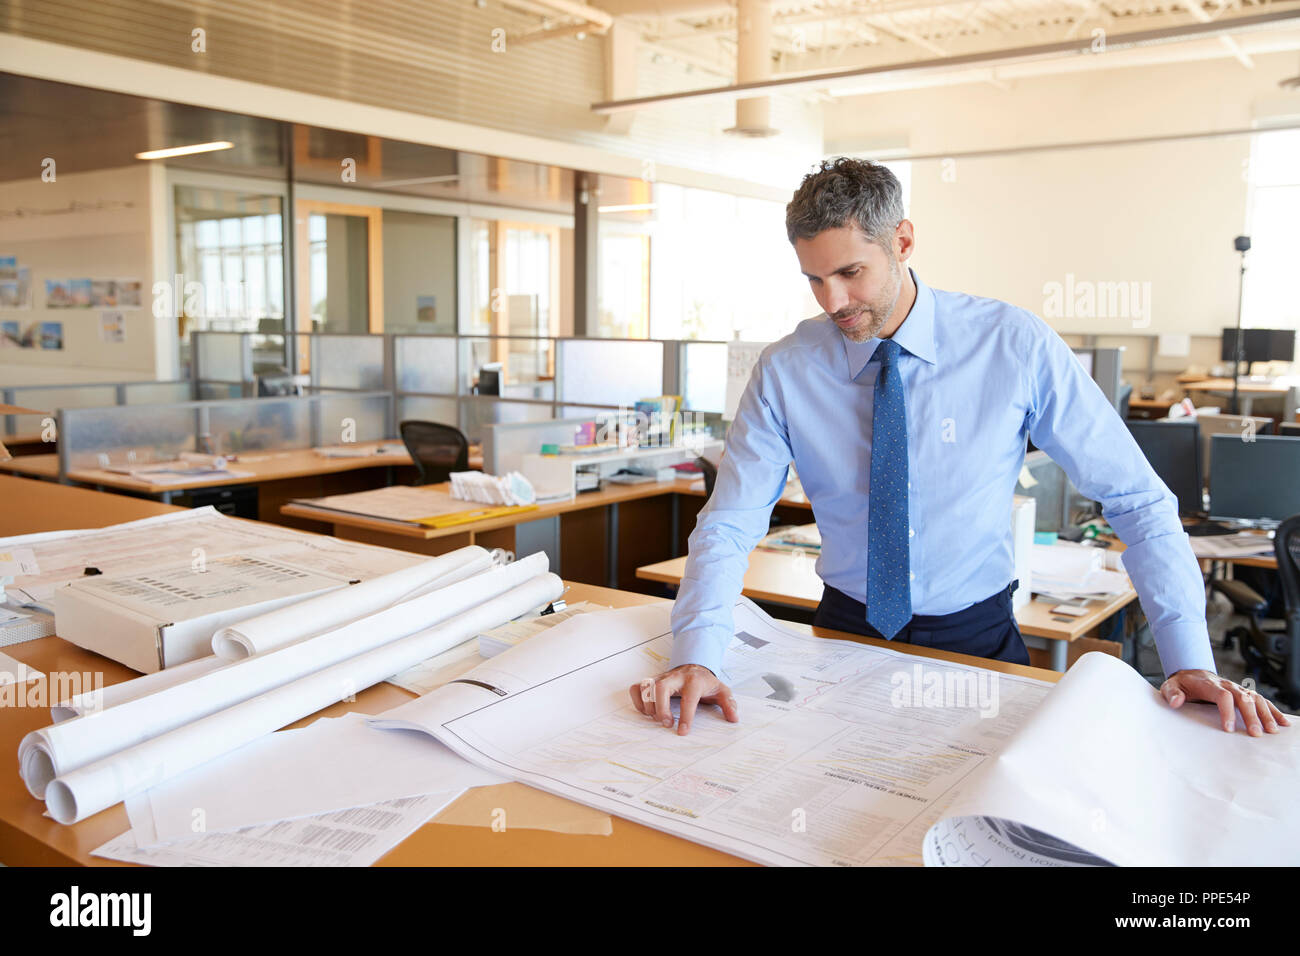 Weiß, männlich Architect bei der Pläne im Großraumbüro suchen Stockfoto